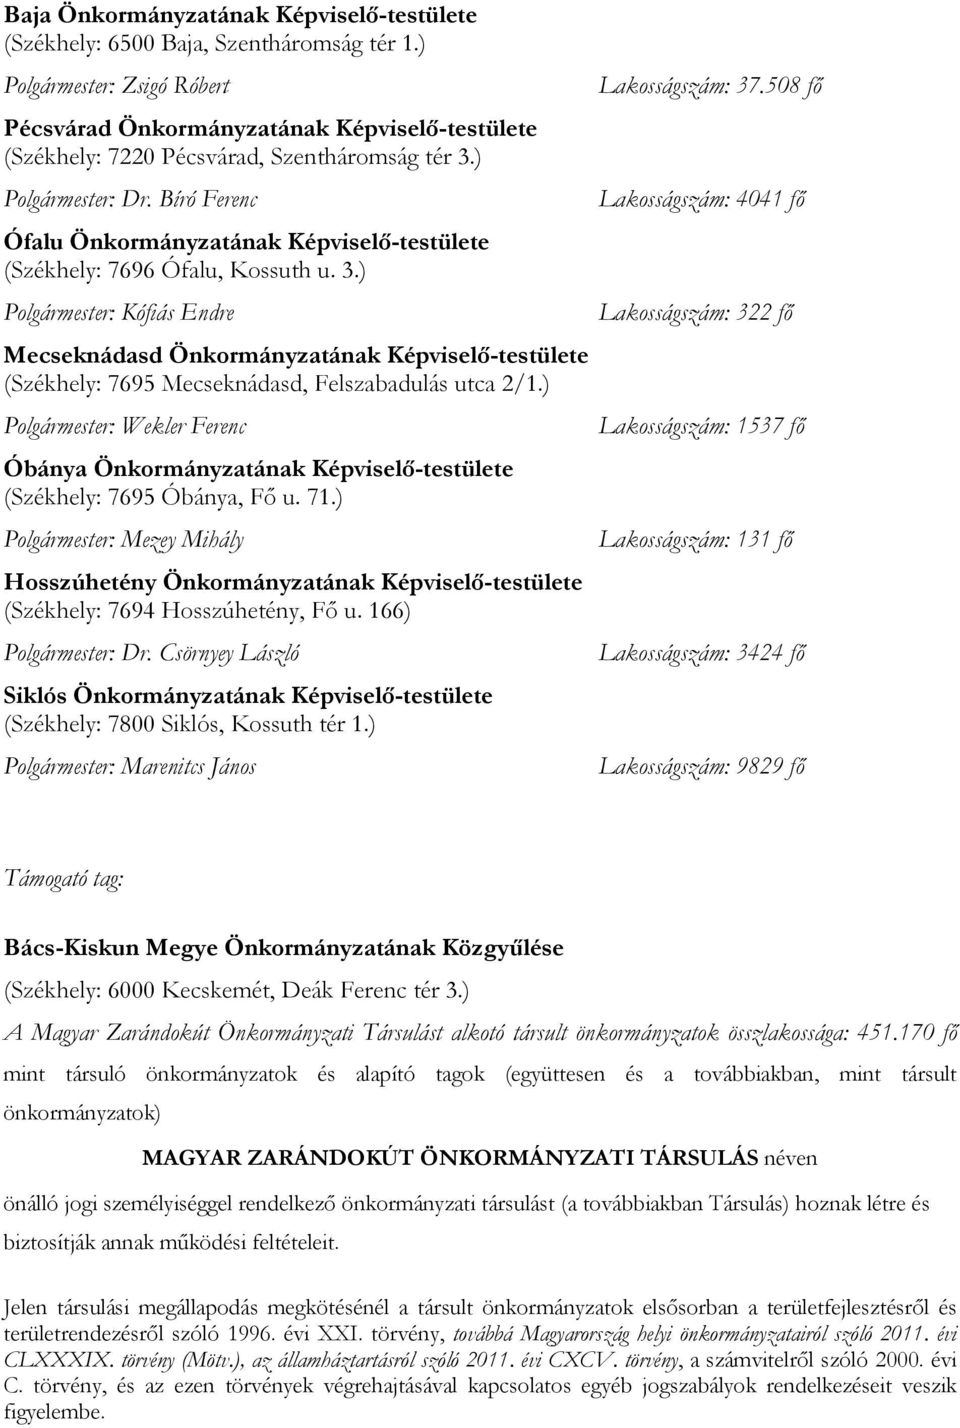 Bíró Ferenc Ófalu Önkormányzatának Képviselő-testülete (Székhely: 7696 Ófalu, Kossuth u. 3.